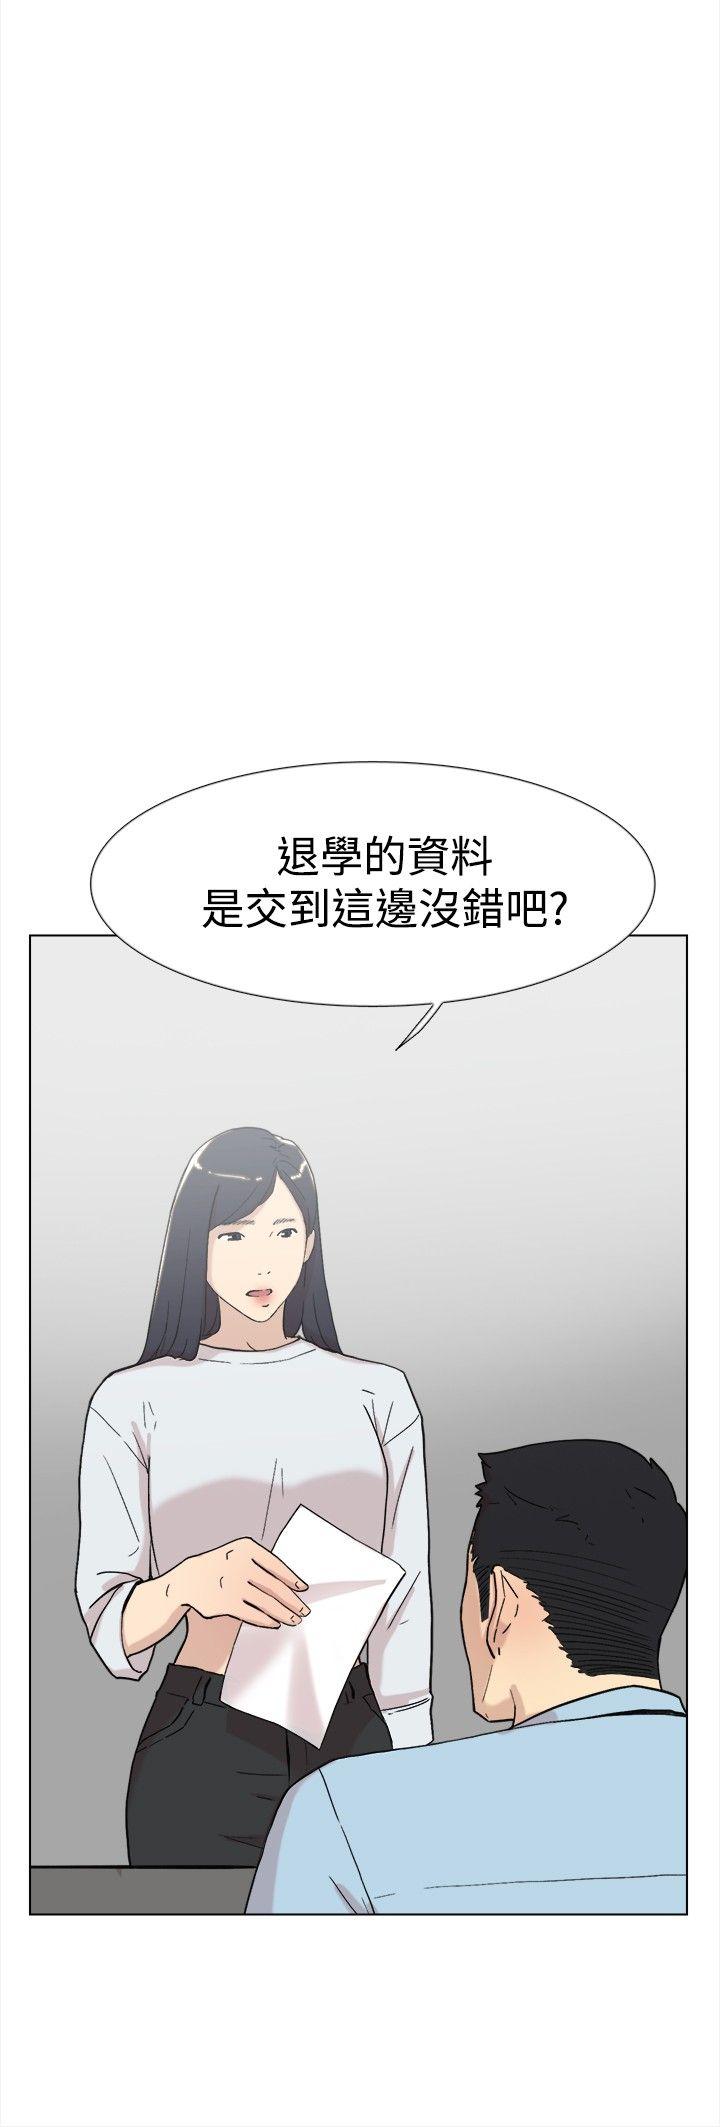 韩国污漫画 雙重戀愛 第60话 19